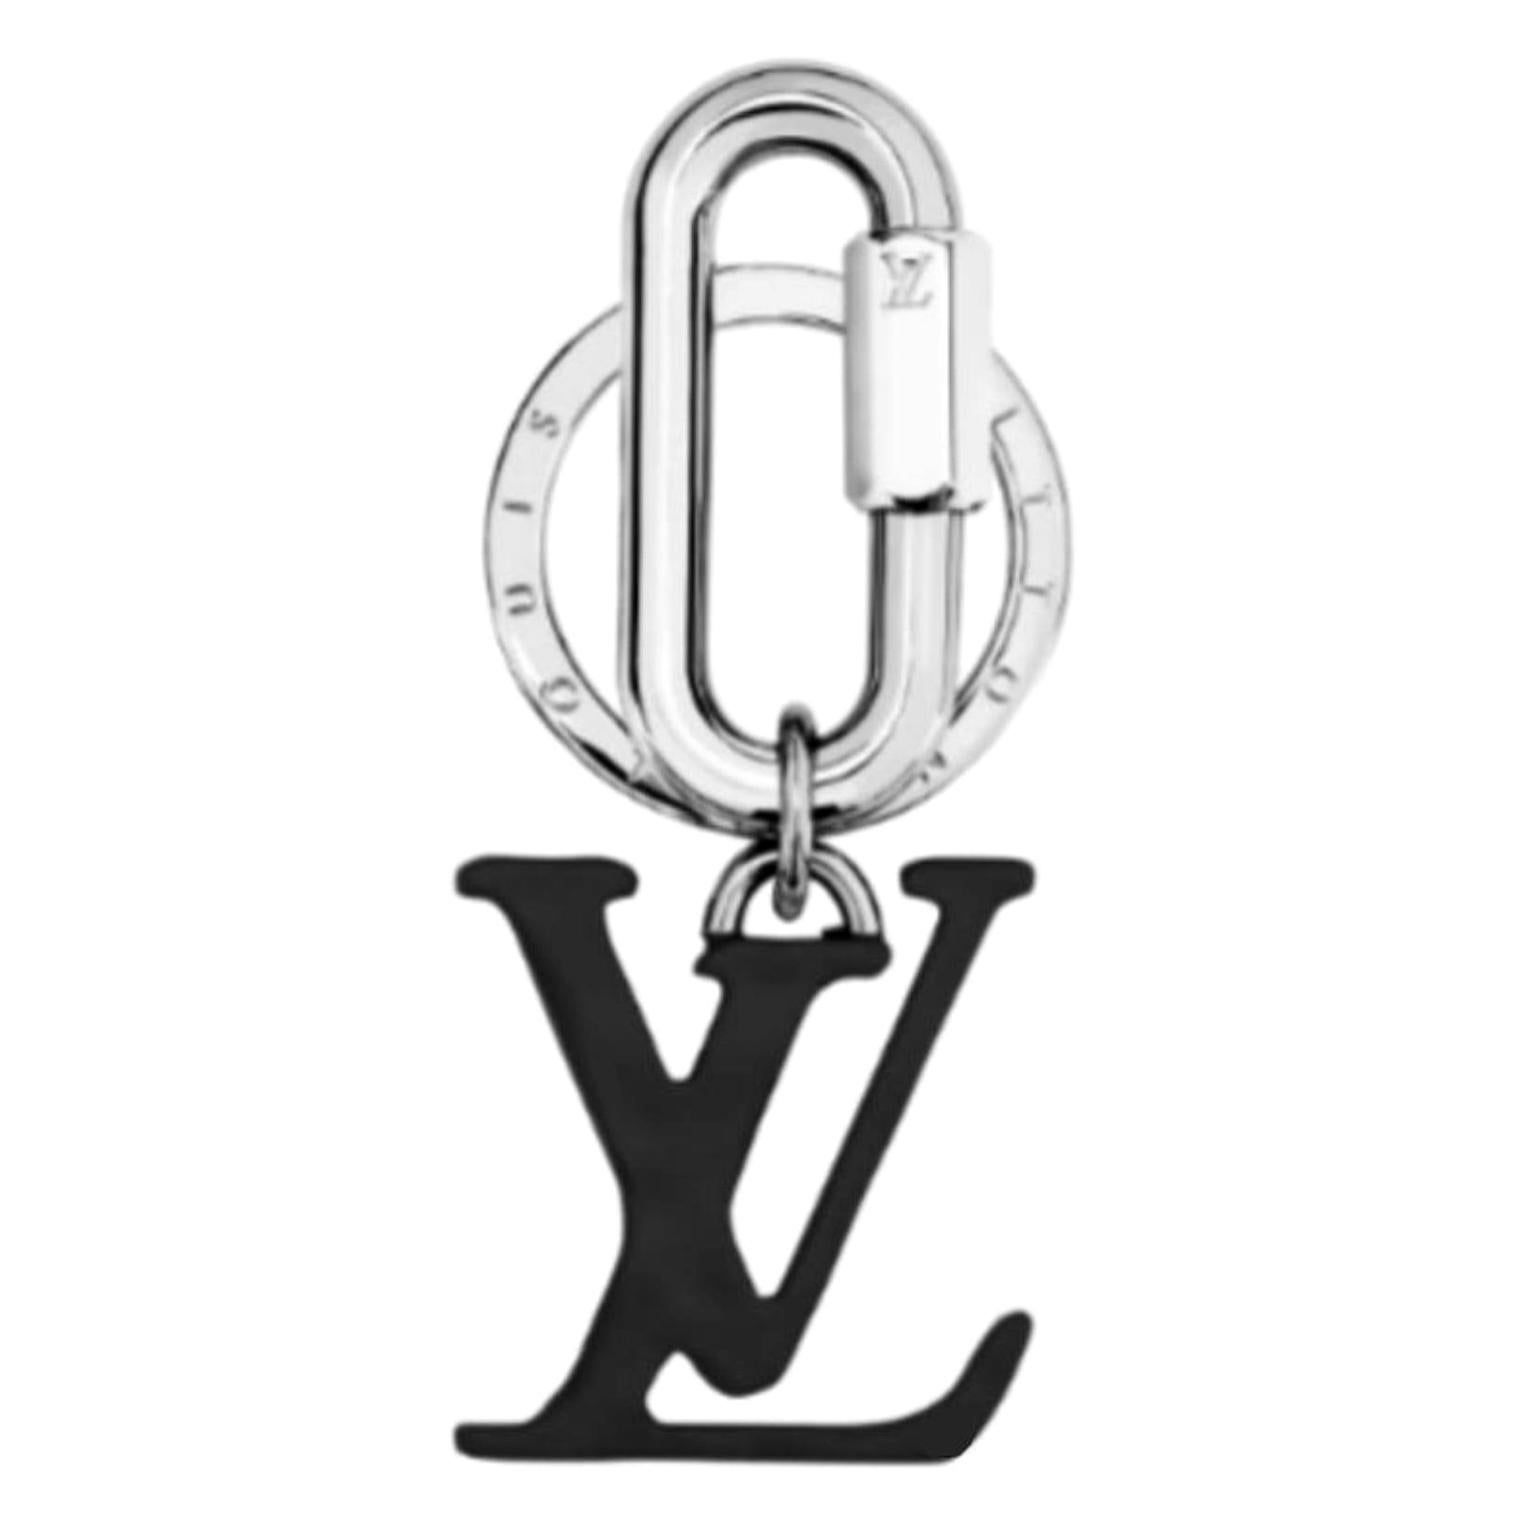 Louis Vuitton Abloh Ss19 Lv Initial Key Chain Ring Bag Pendant 21le0110  For Sale